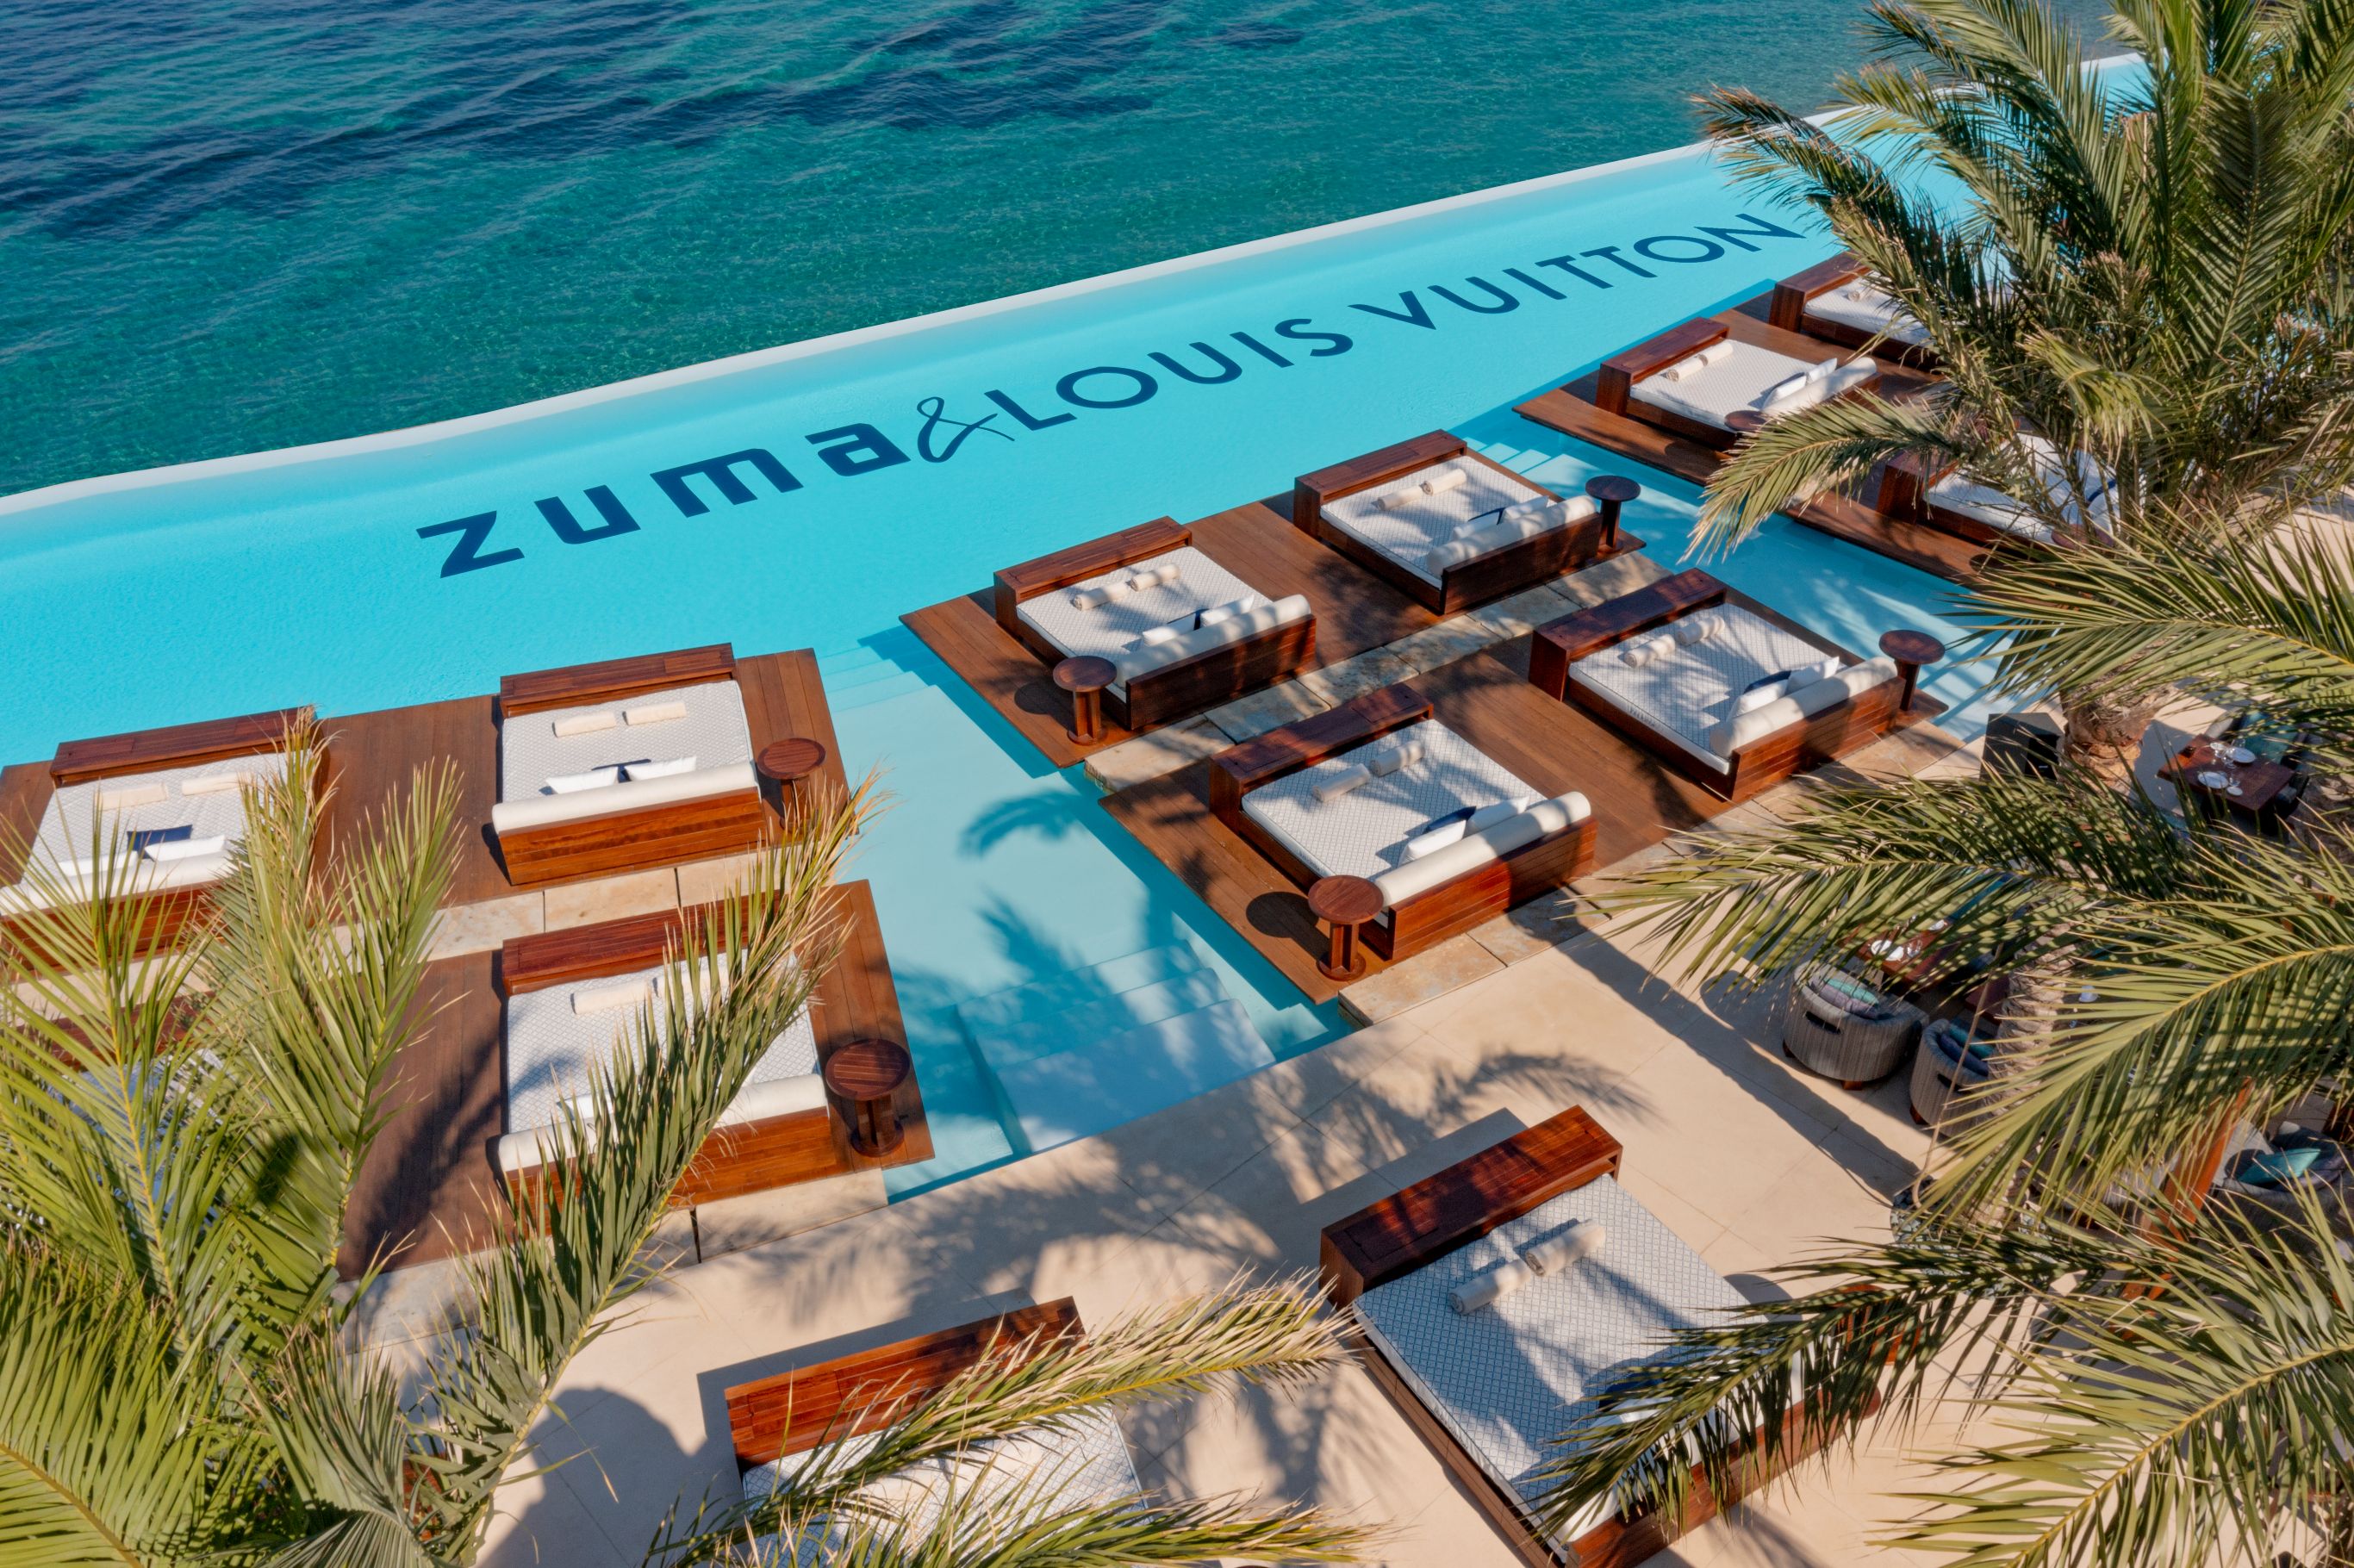 Louis Vuitton Takes Over Zuma In Mykonos - A&E Magazine